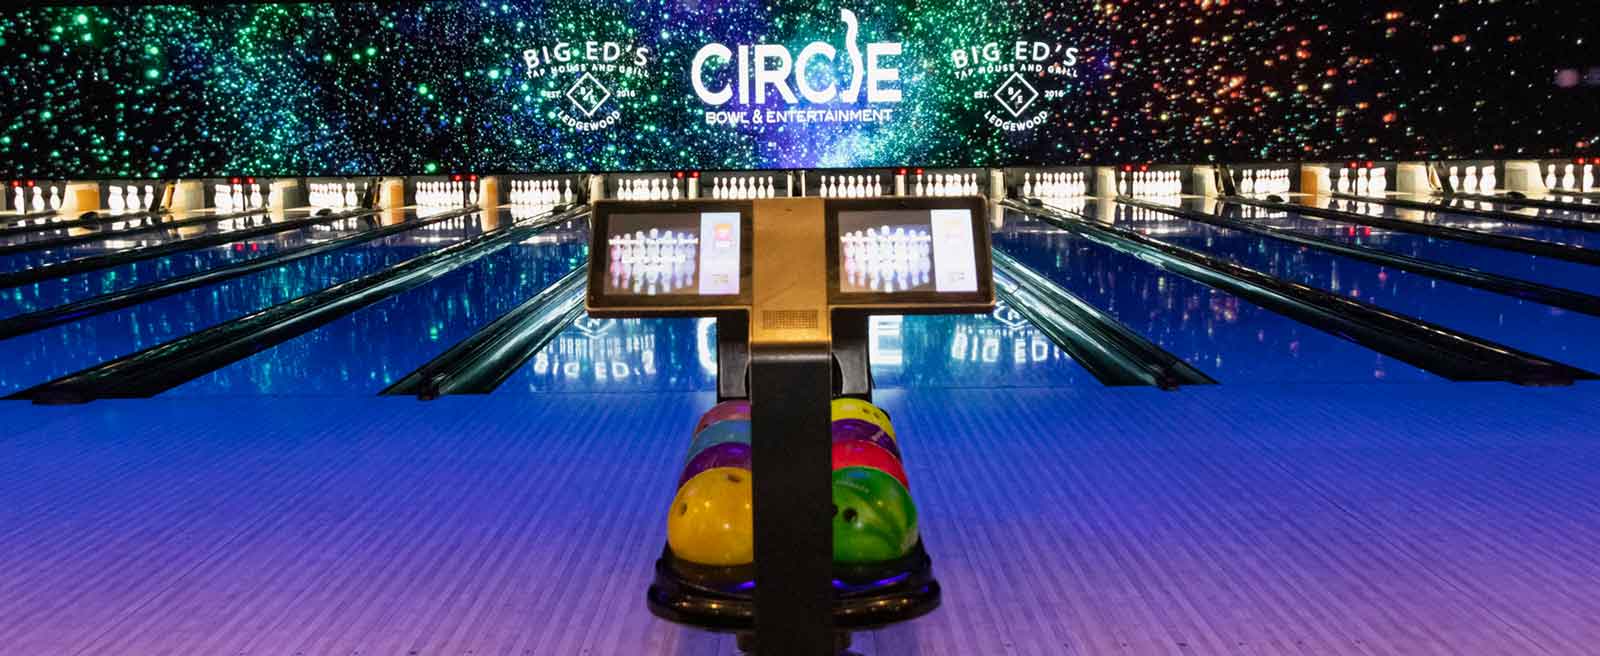 Circle Bowling and Entertainment